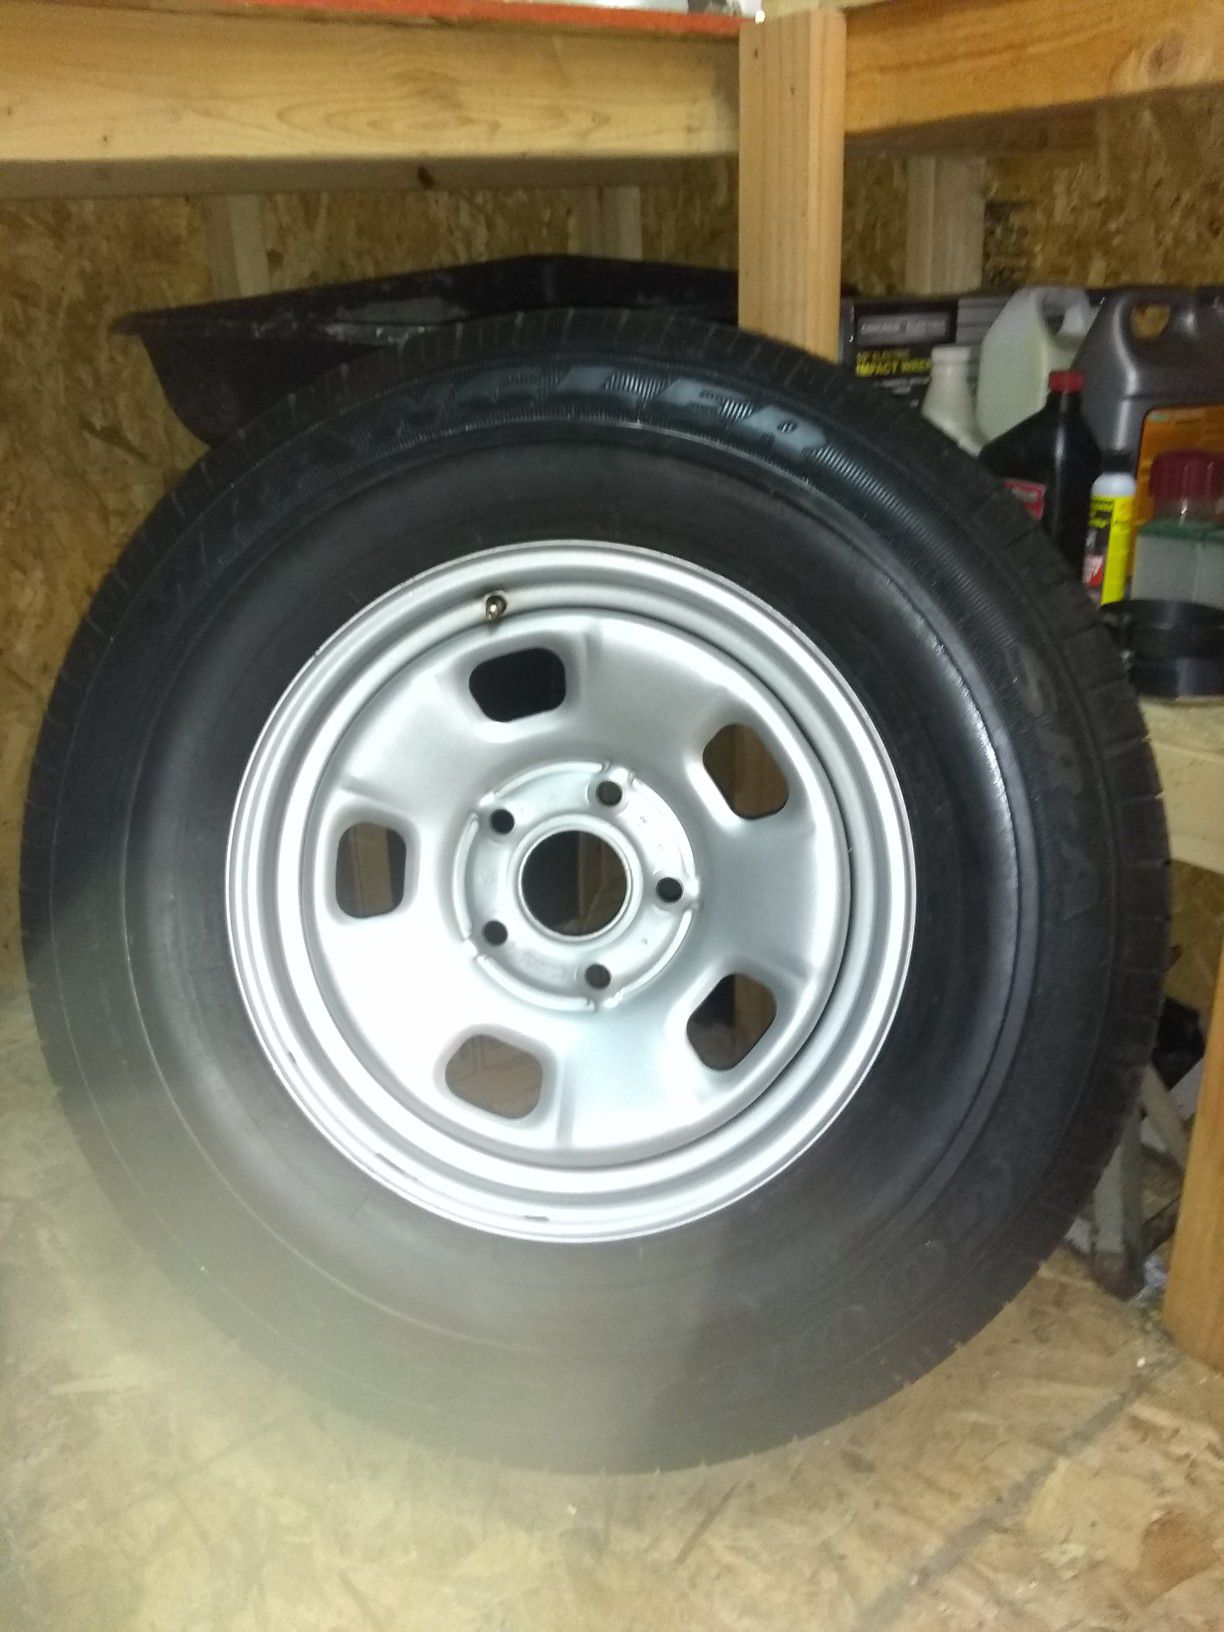 New tires!Goodyear wrangler P265/70R17